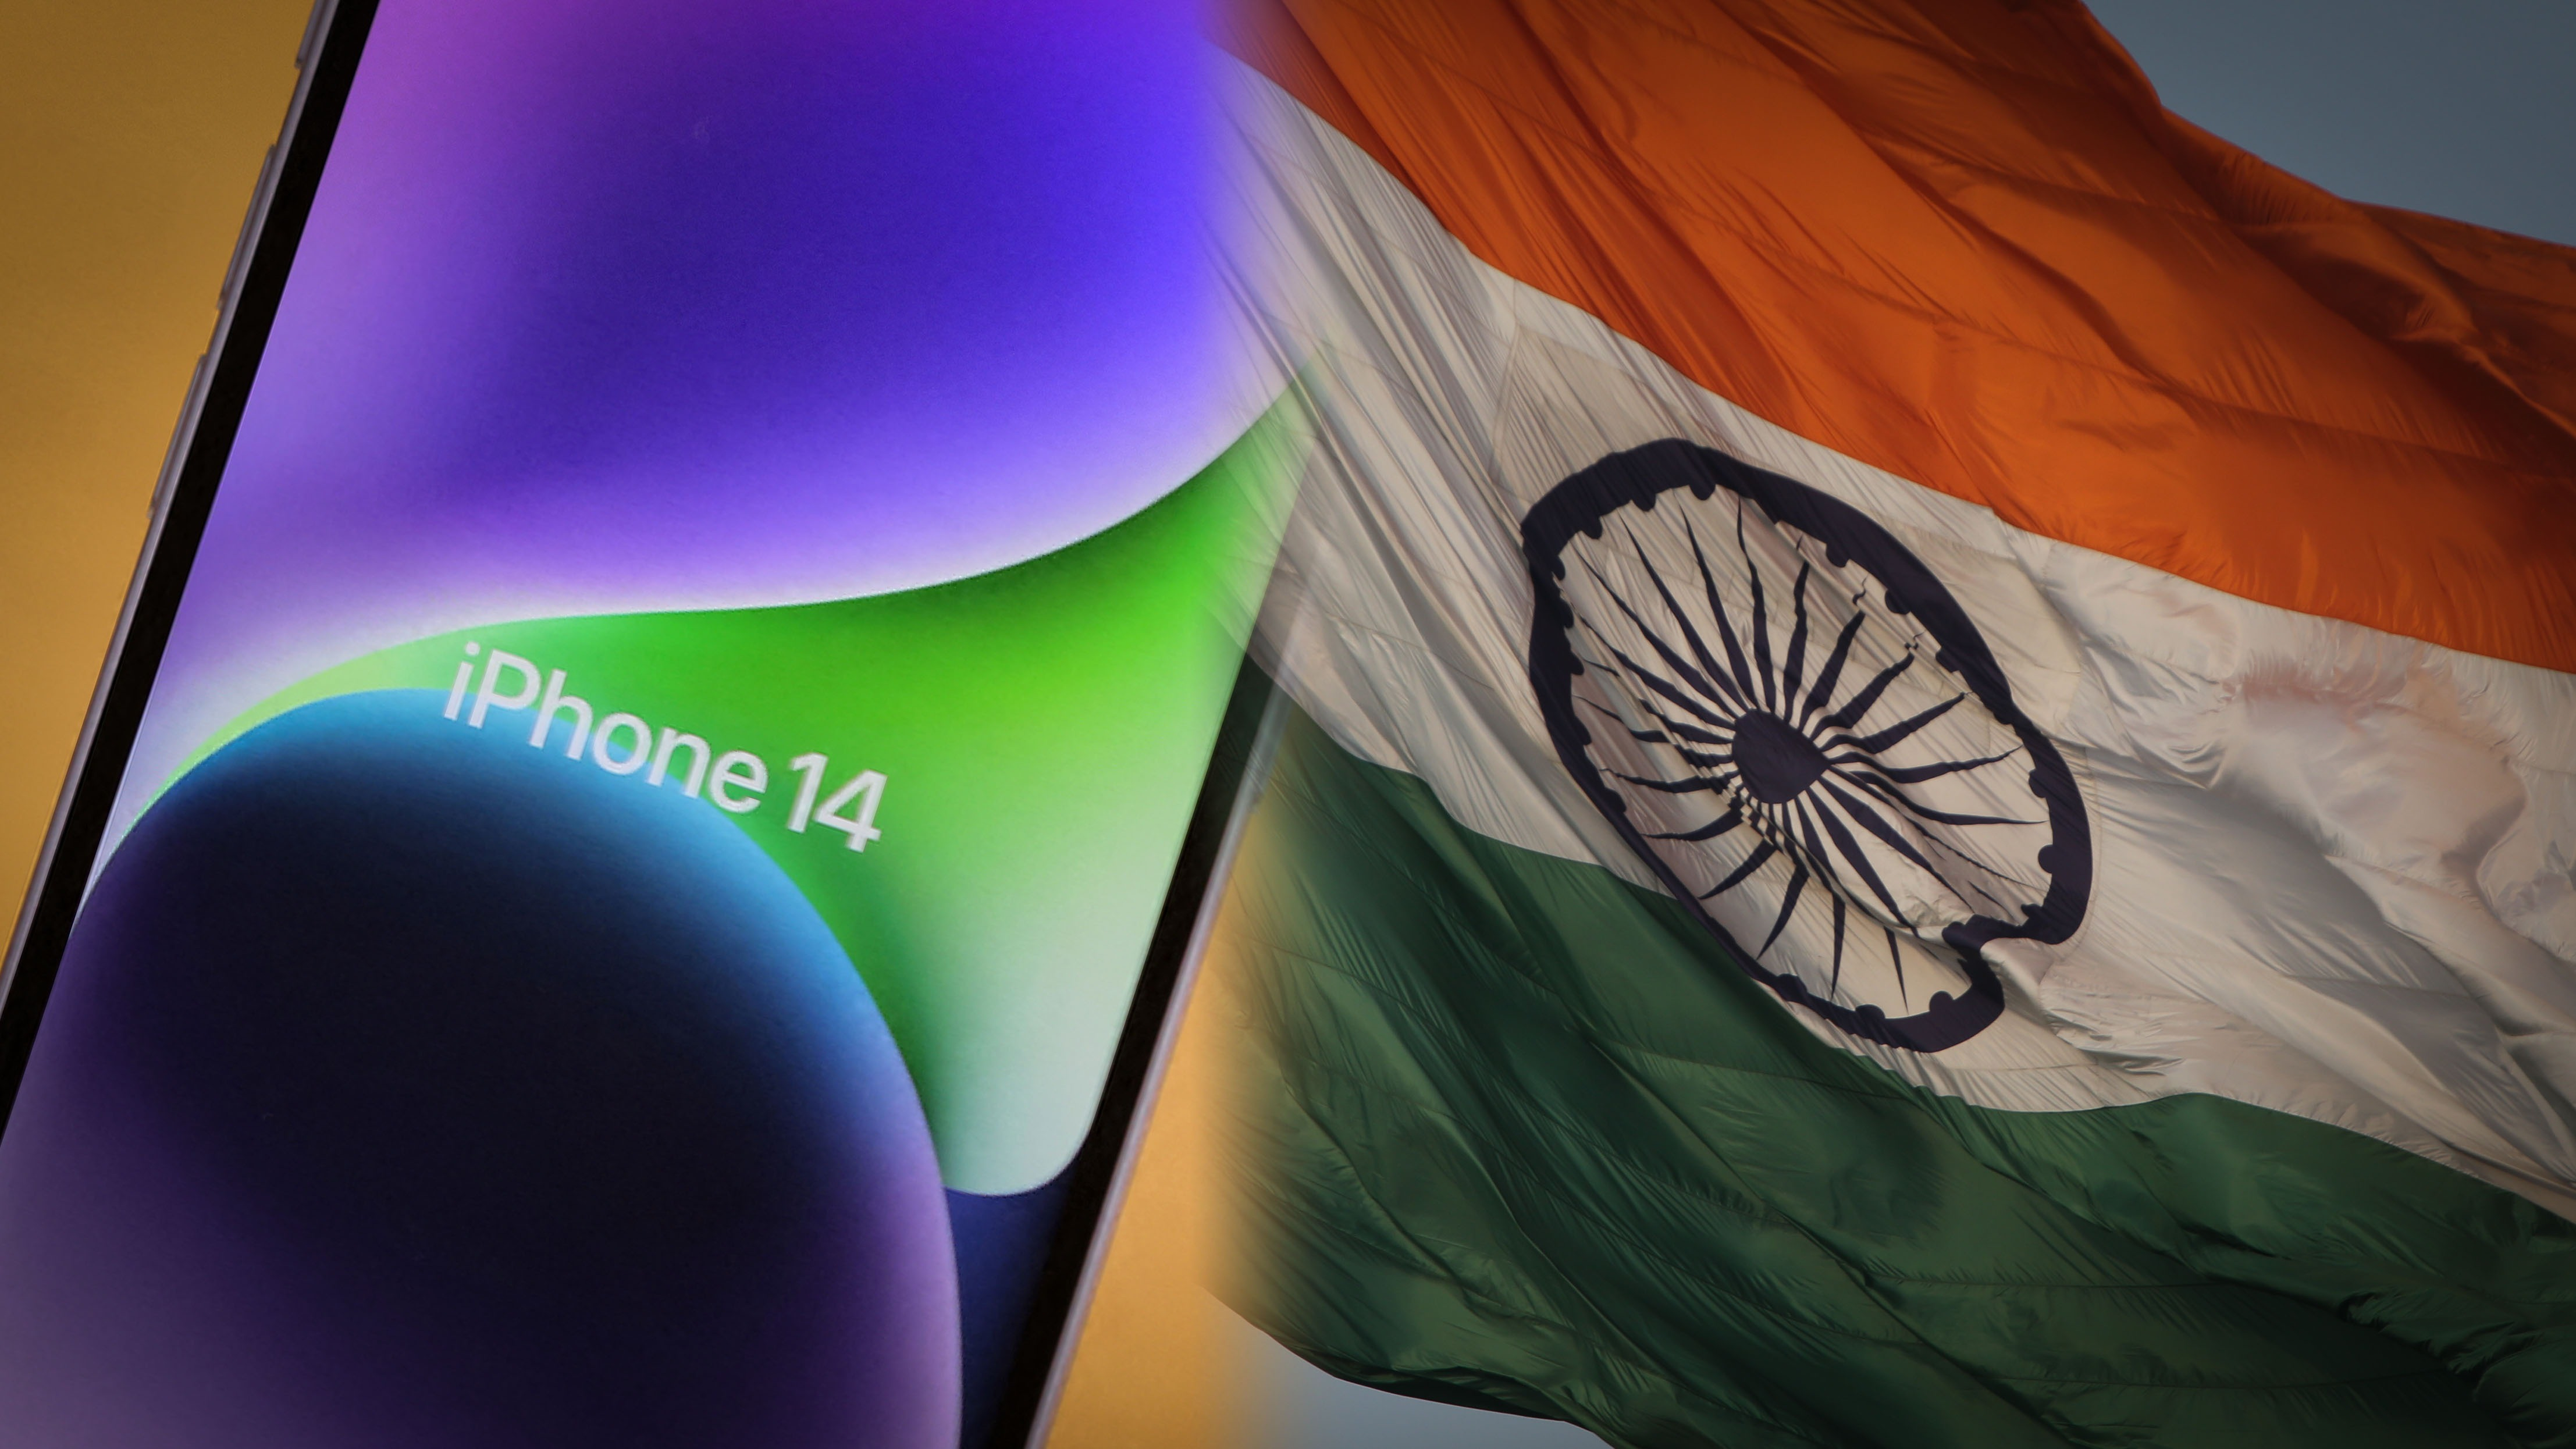 Vì sao iPhone 14 sản xuất tại Ấn Độ lại quan trọng?